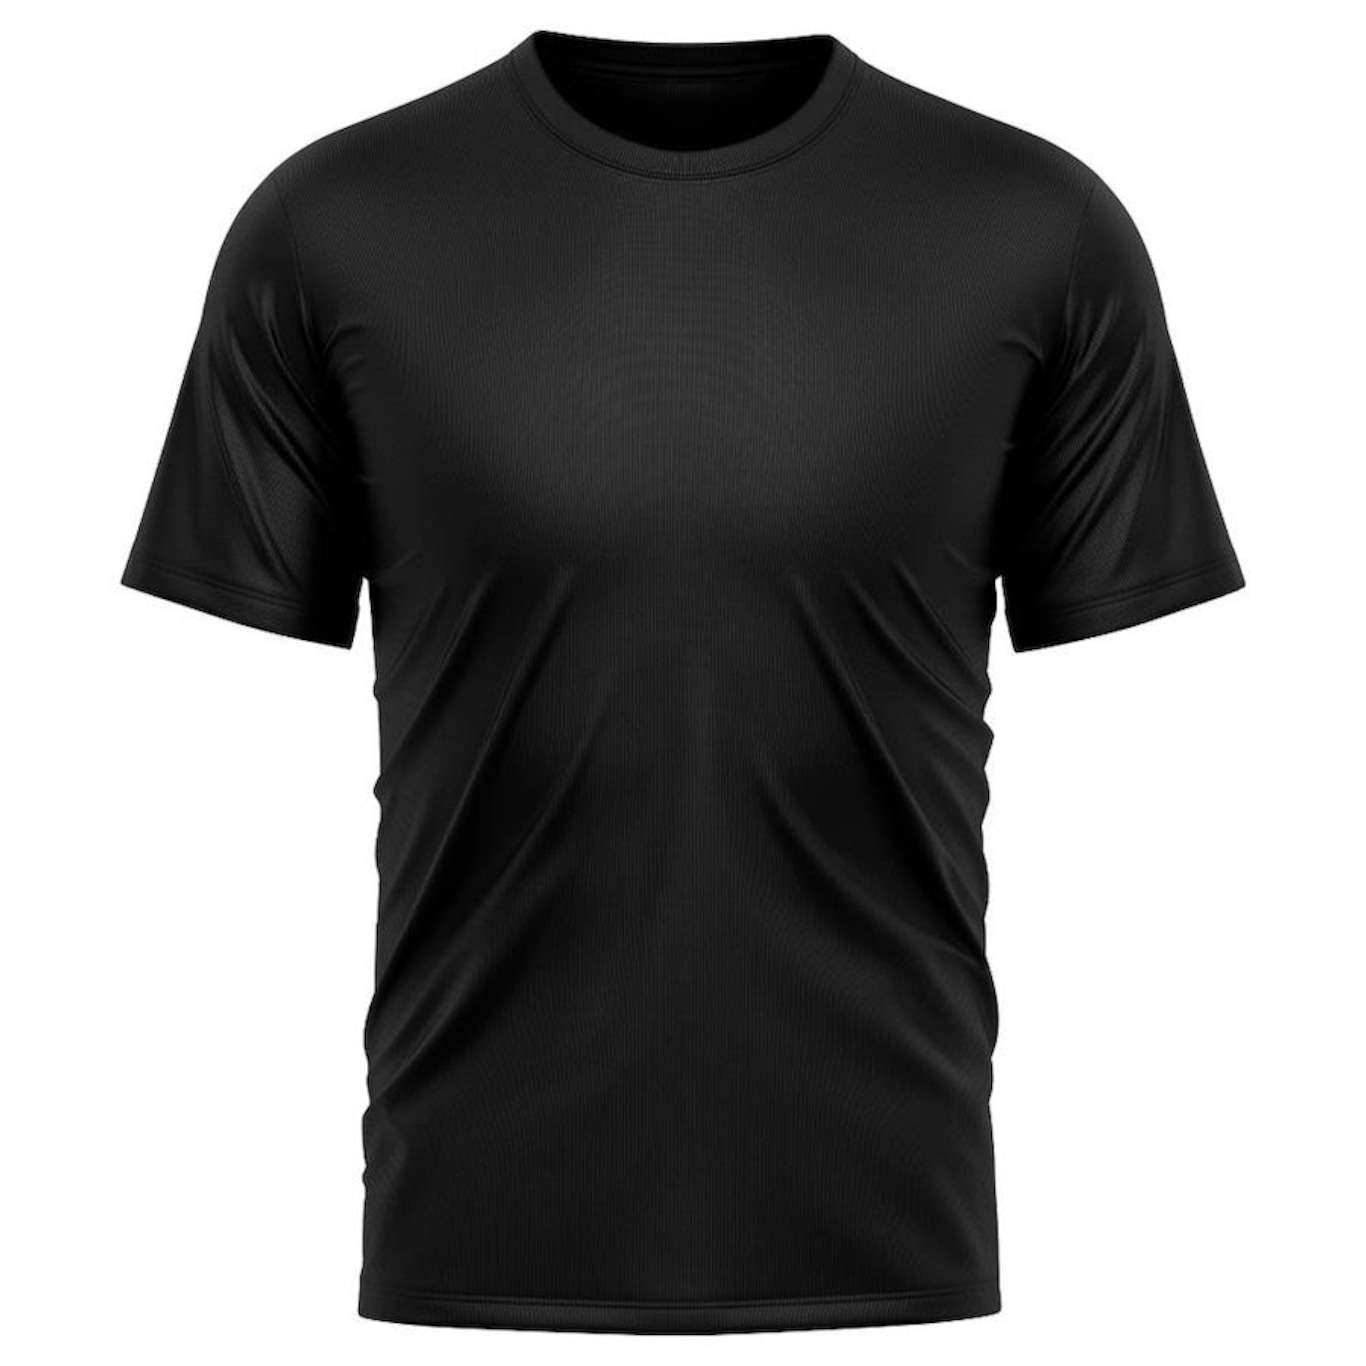 Camiseta Whats Wear Lisa Dry Fit com Proteção Solar UV - Masculina - Foto 1